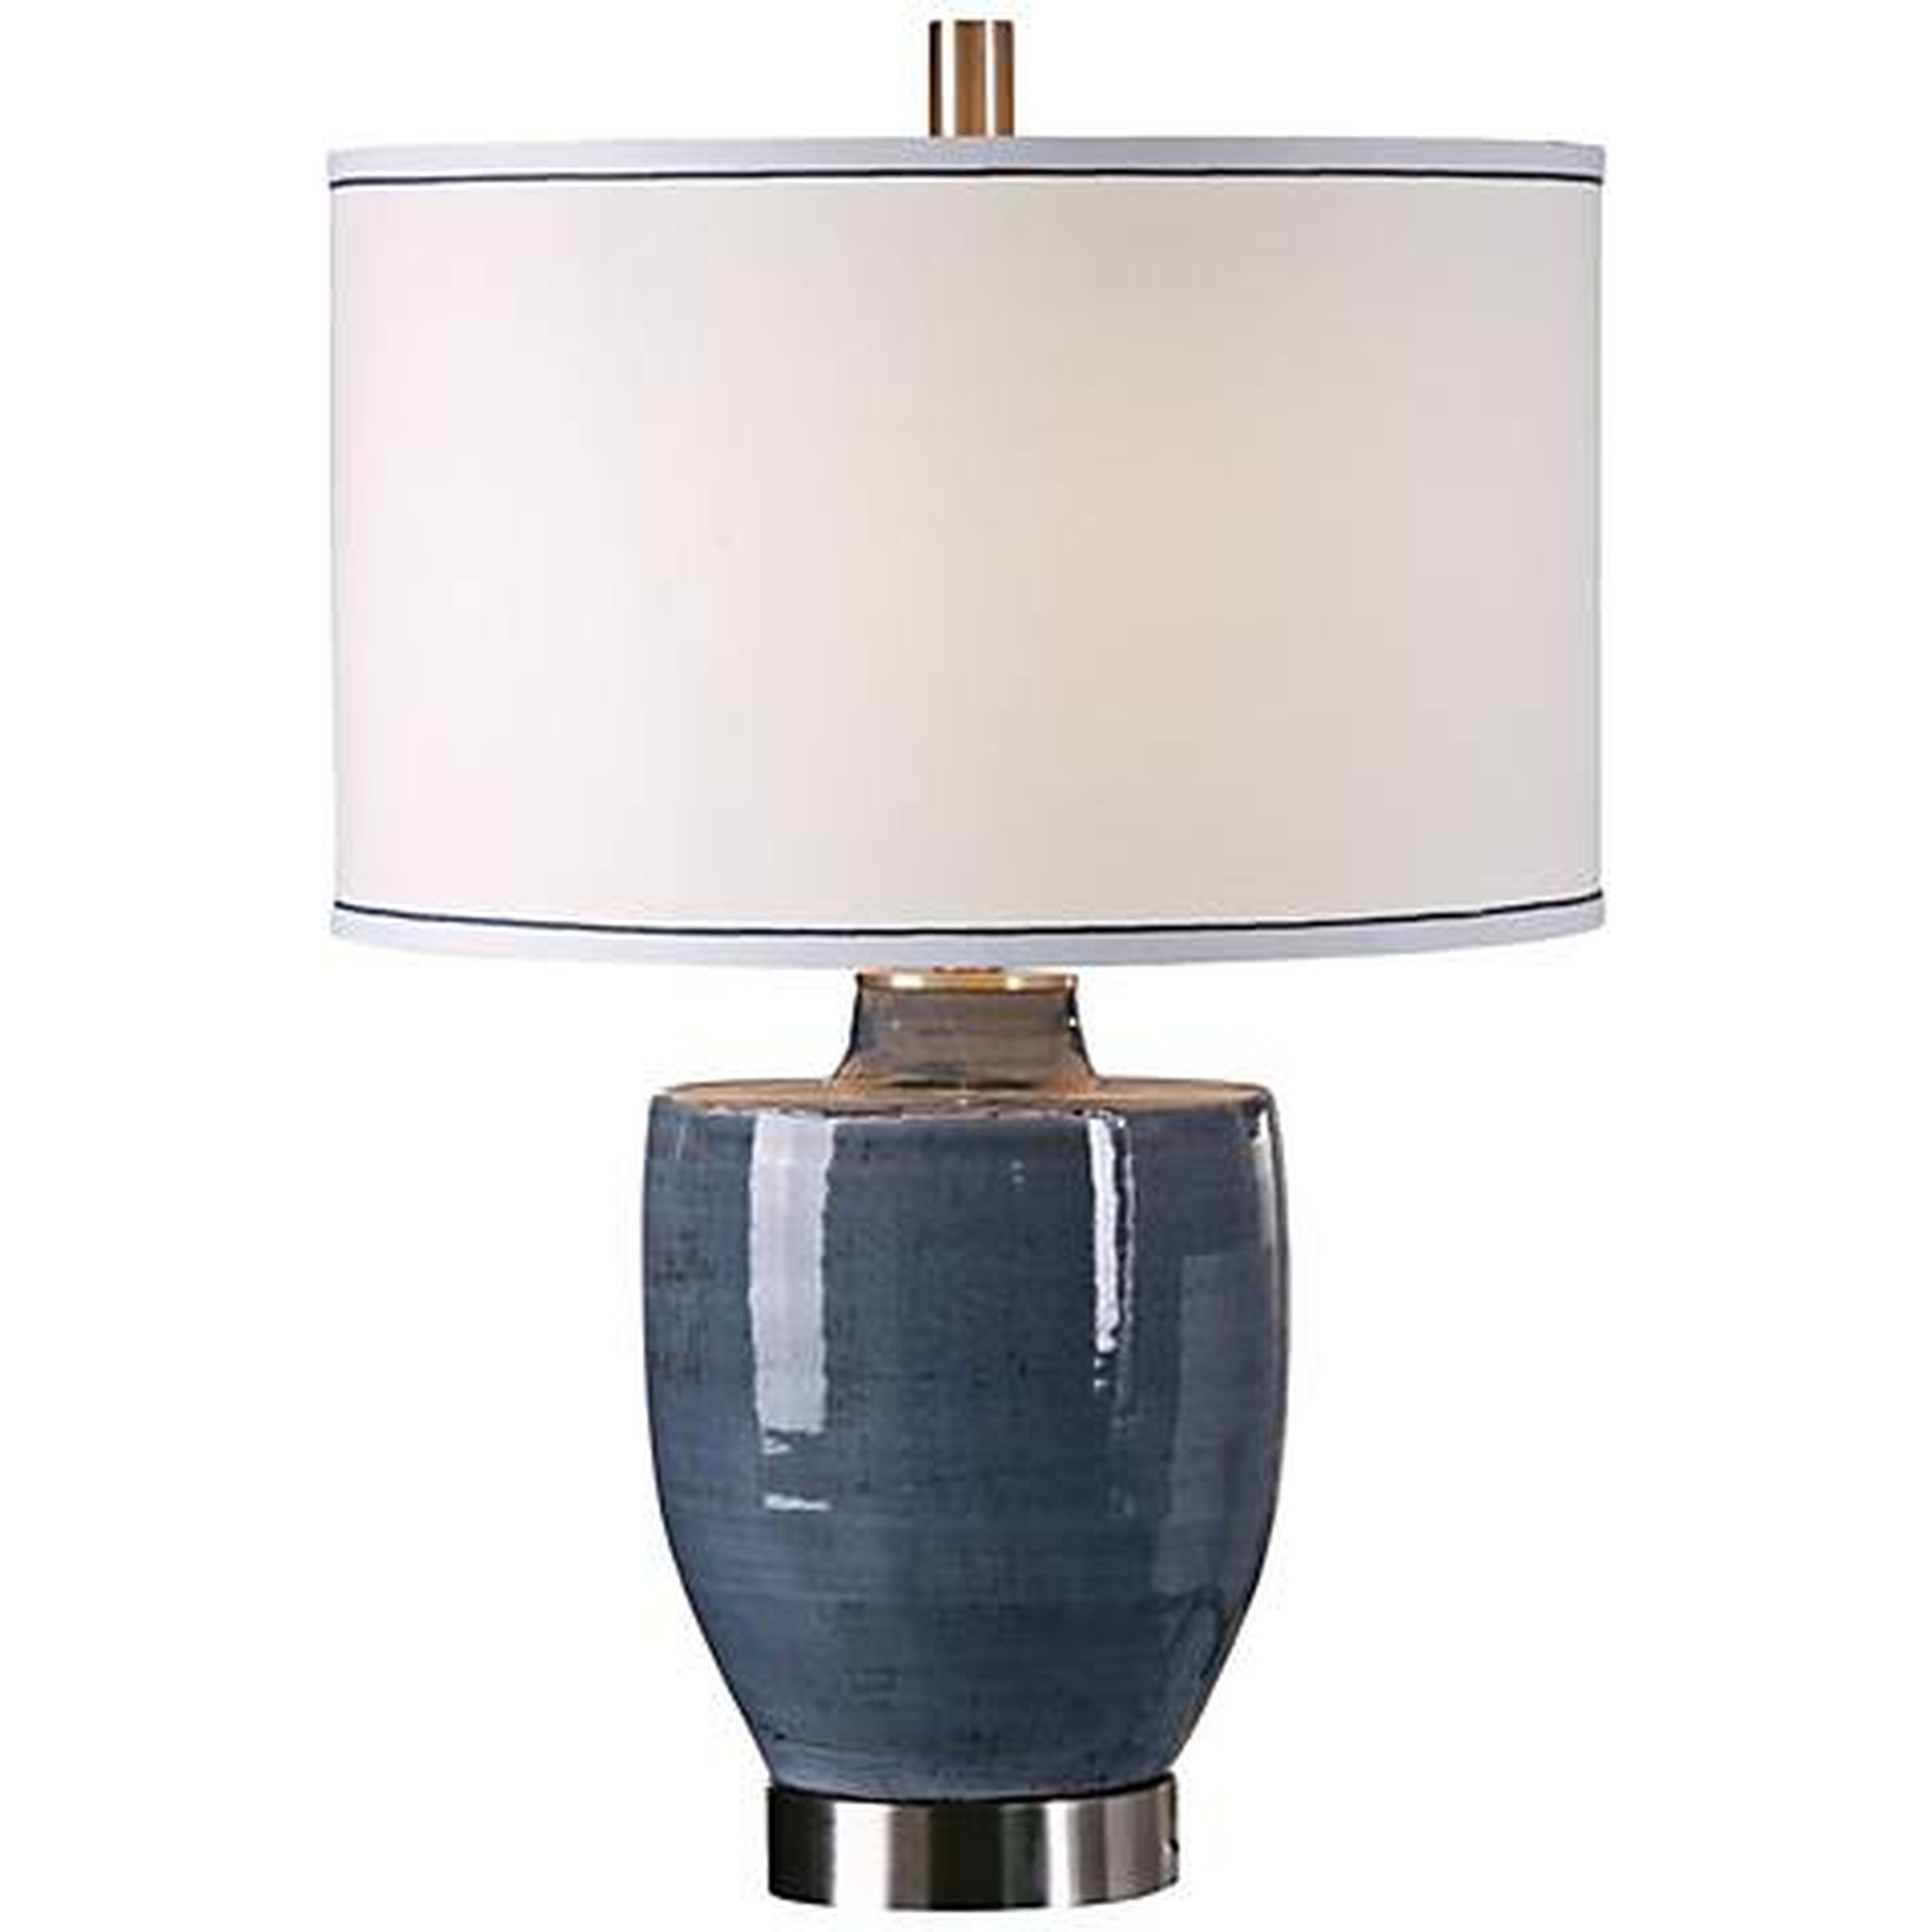 Uttermost Sylvaine Crackle Blue-Gray Ceramic Table Lamp - Lamps Plus